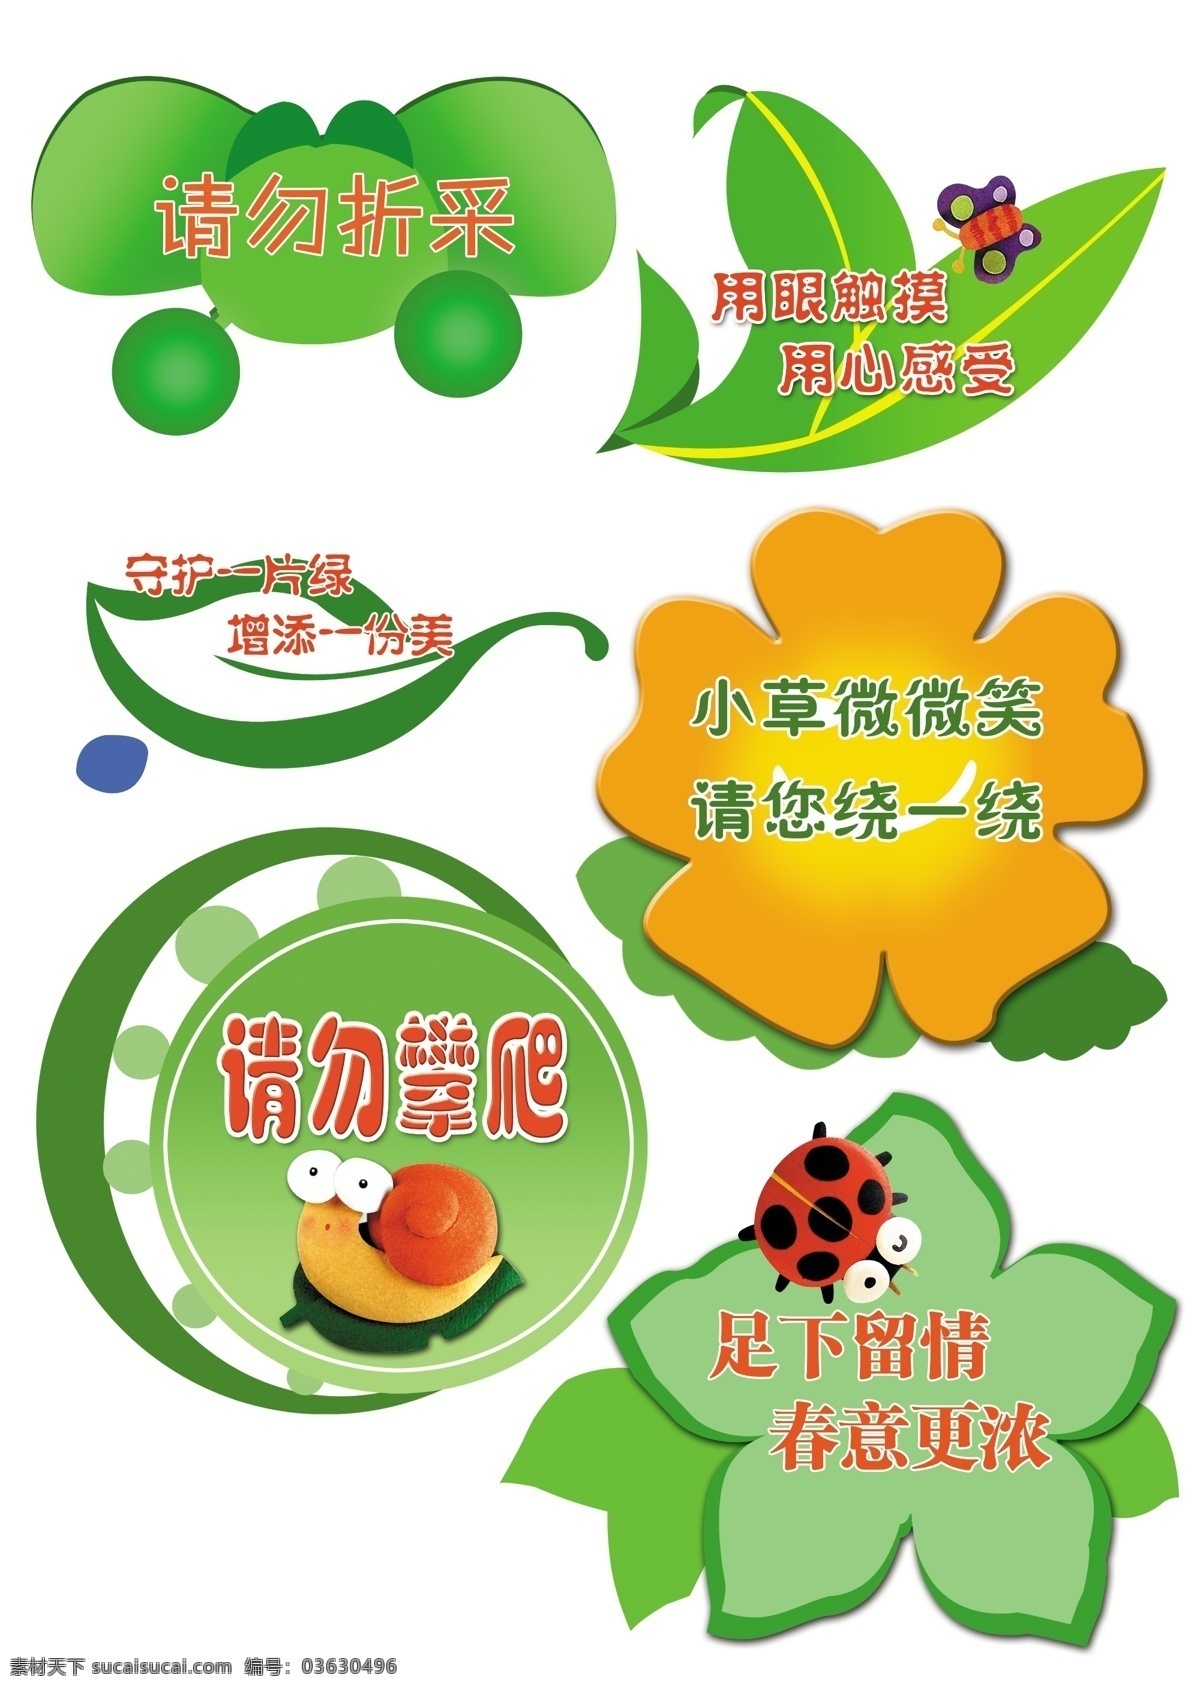 绿化标语 绿草坪 标语 瓢虫 蝴蝶 蜗牛 温馨提示 其他模版 广告设计模板 源文件